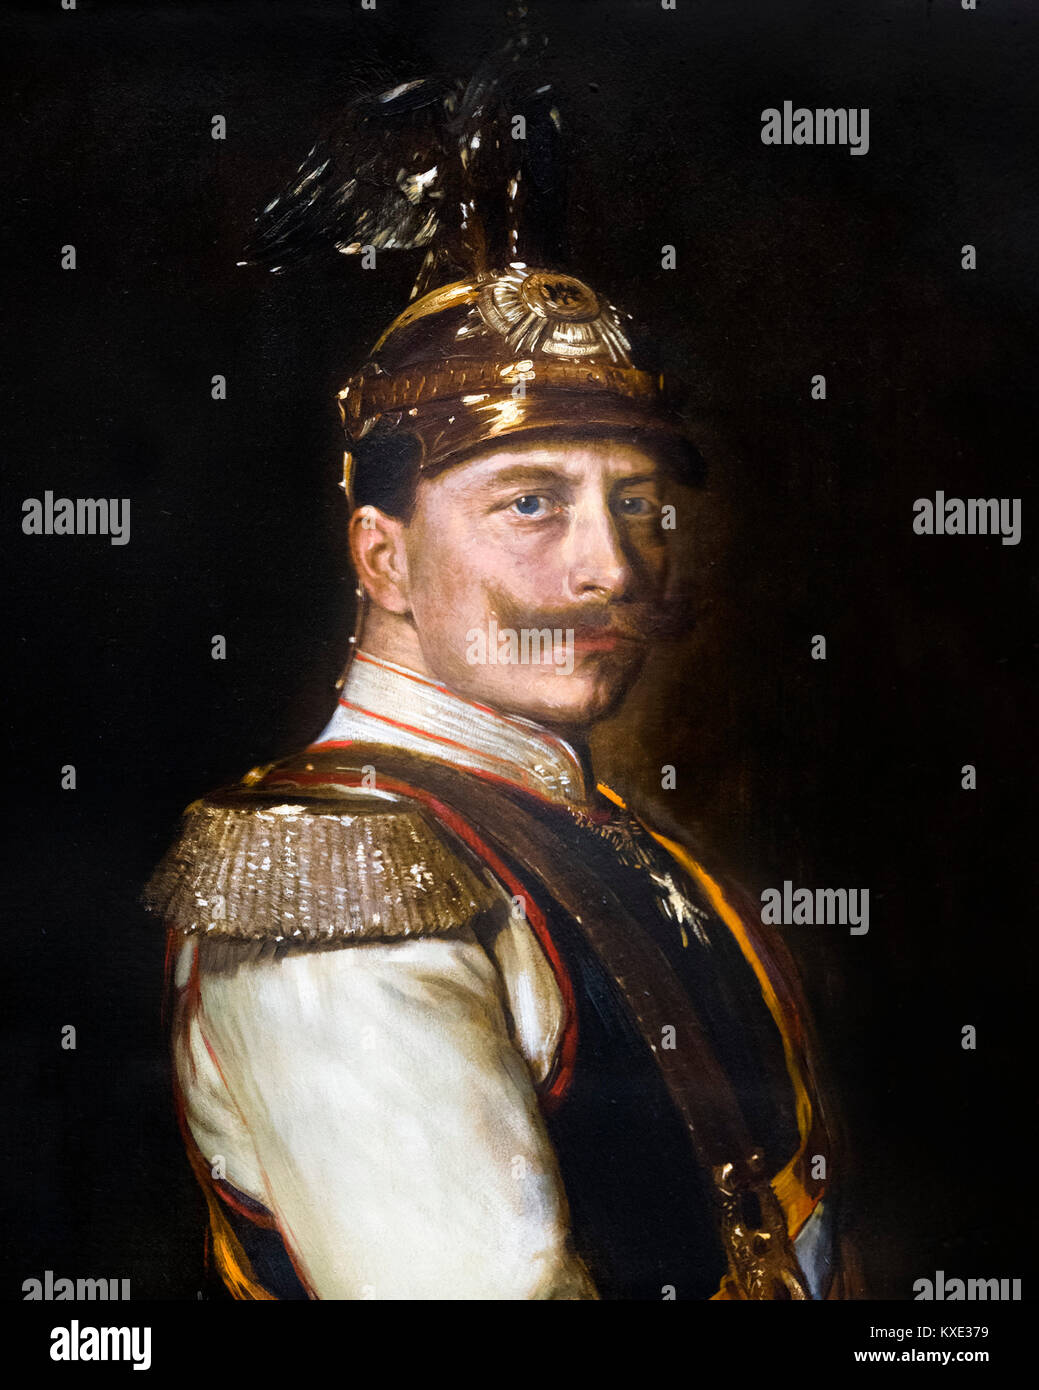 Ritratto di Kaiser Wilhelm II (1859-1941), l'imperatore di Germania e re di Prussia, vestito in uniforme. Dipinto di Vilma Parlaghy, 1895. Questa immagine è un raccolto di un dipinto di grandi dimensioni H29DXH. Foto Stock